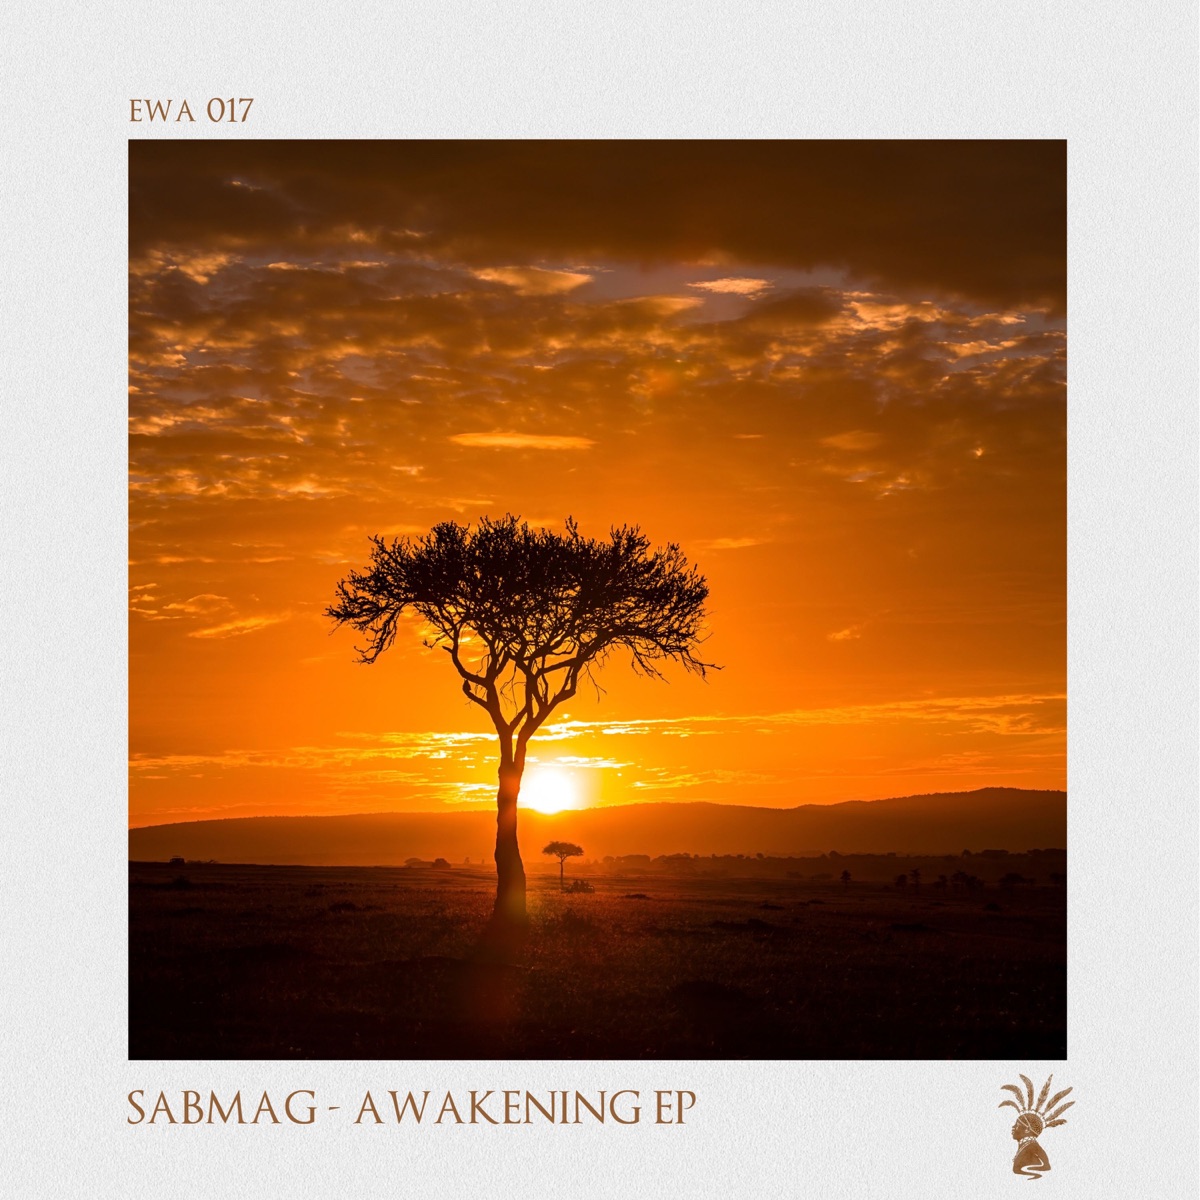 Sabmag - Awakening Ep 1